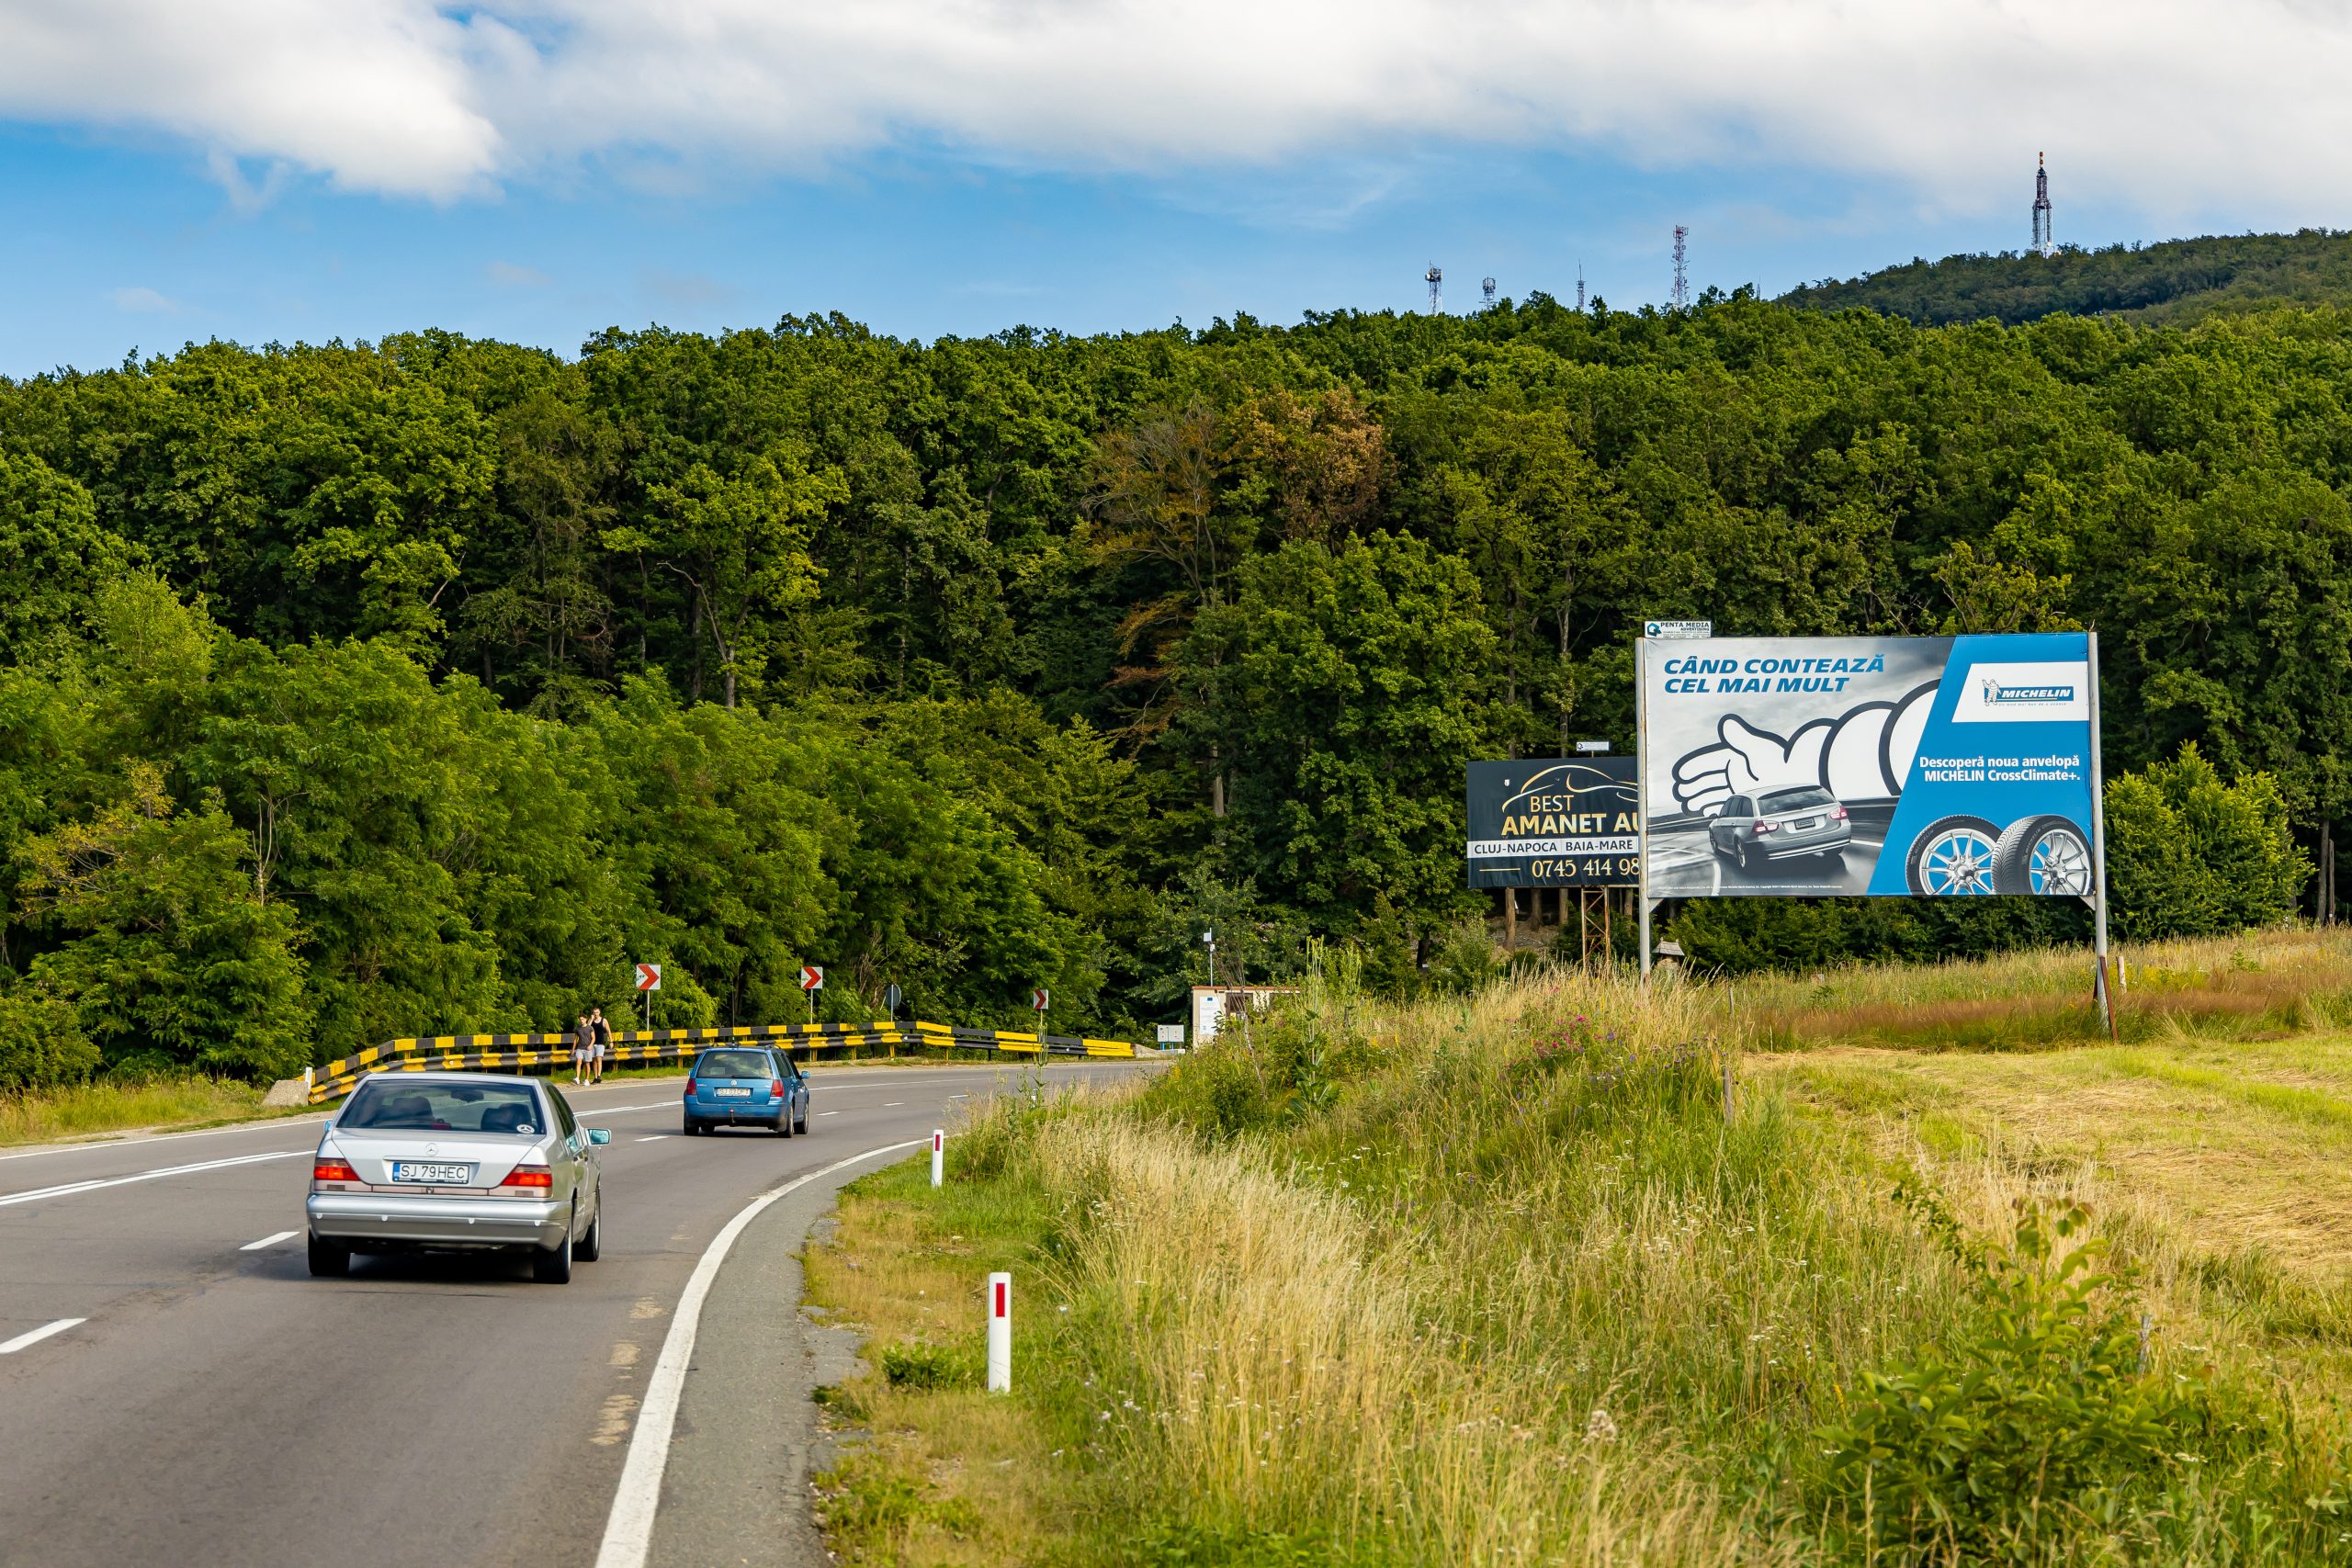 Panou publicitar de tip billboard amplasat la ieșirea din oraș